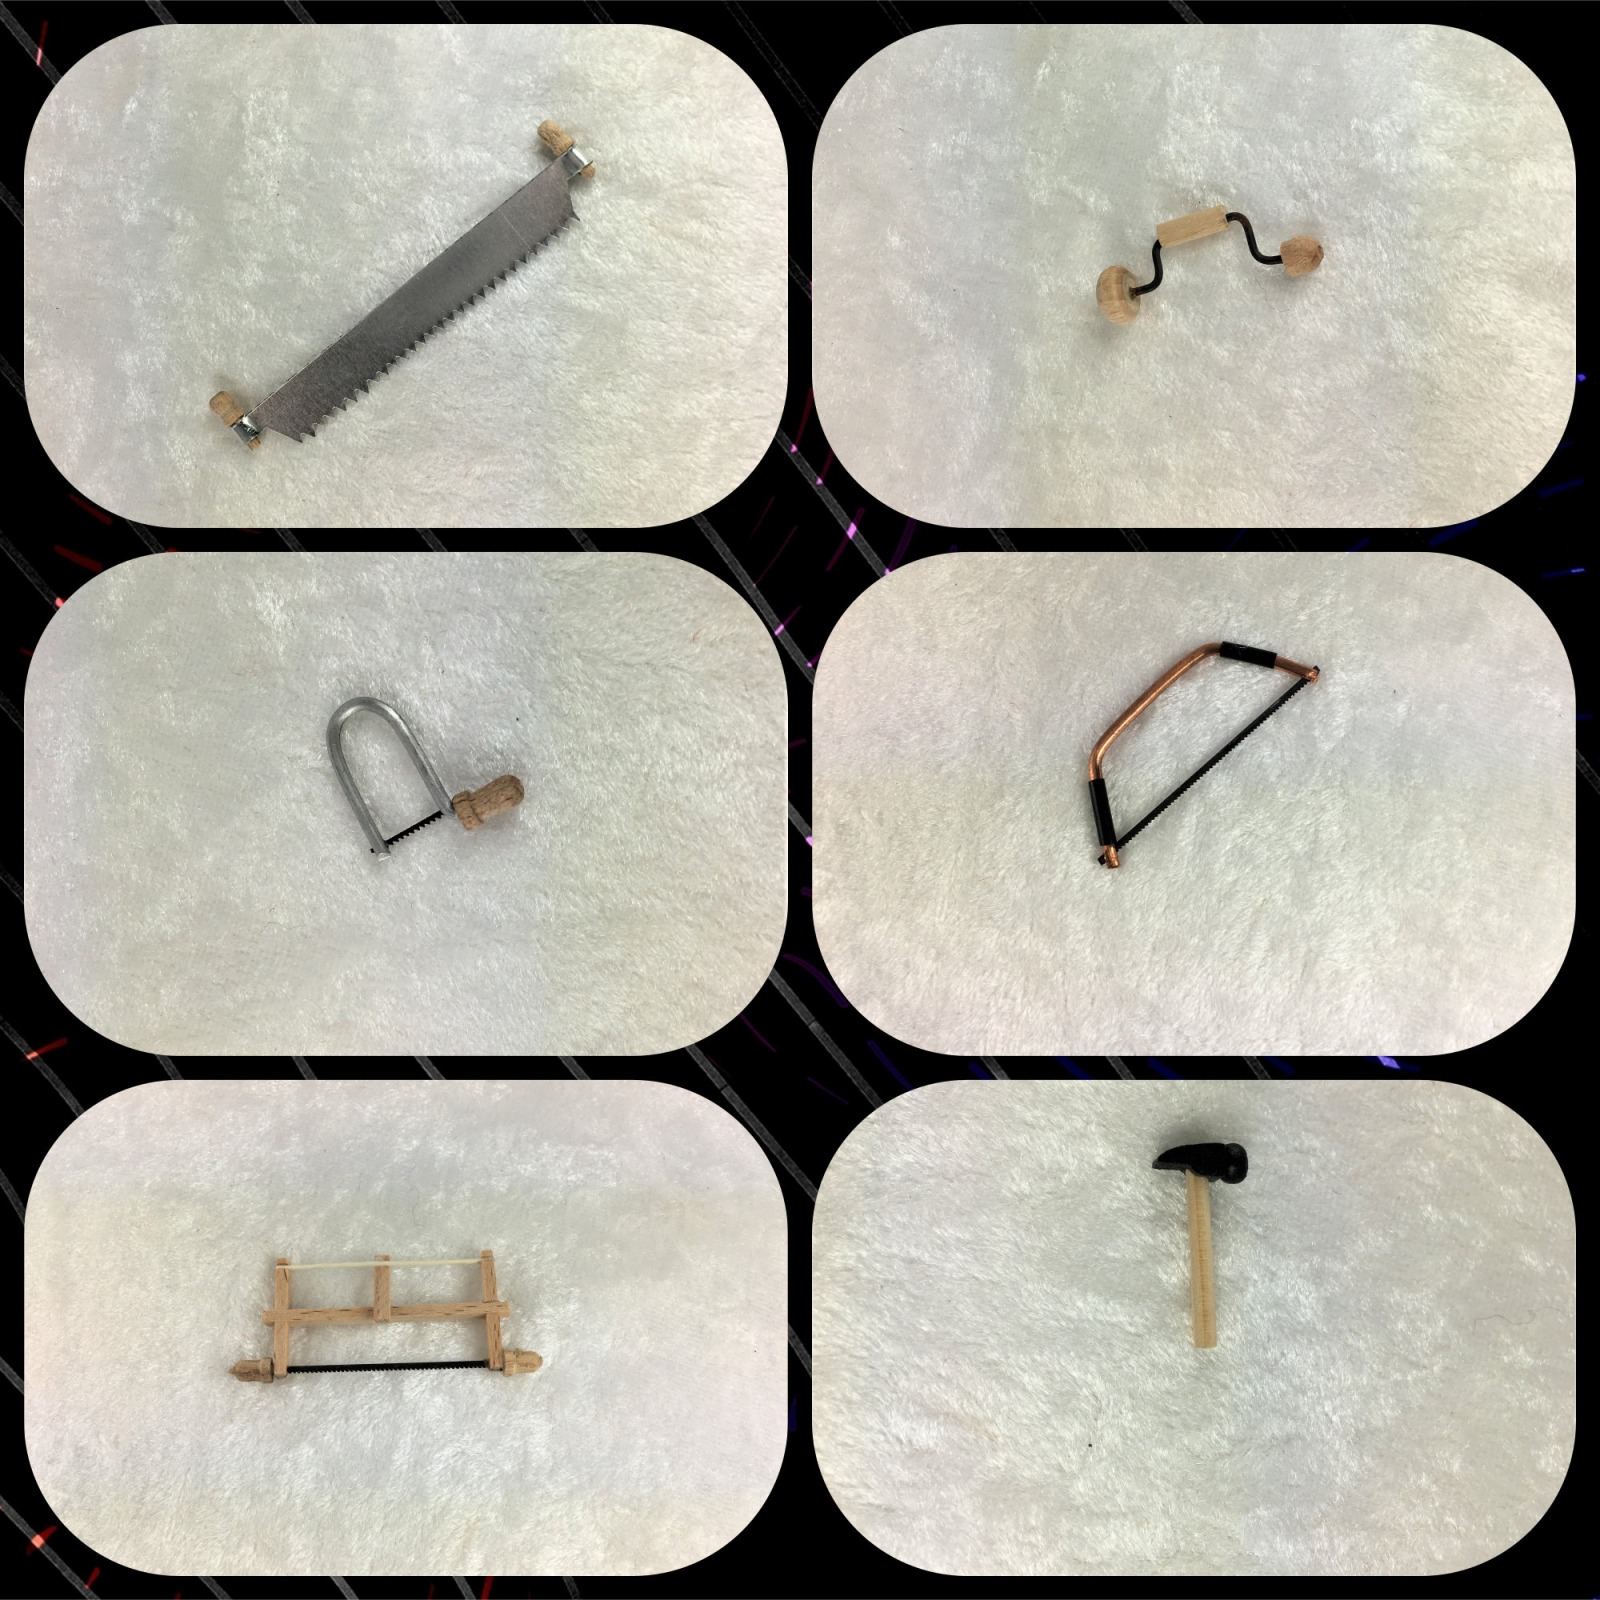 Werkzeug, Hobel, Laubsäge, Hammer, Baumsäge, Rahmensäge, Bügelsäge für die Puppenstube, das